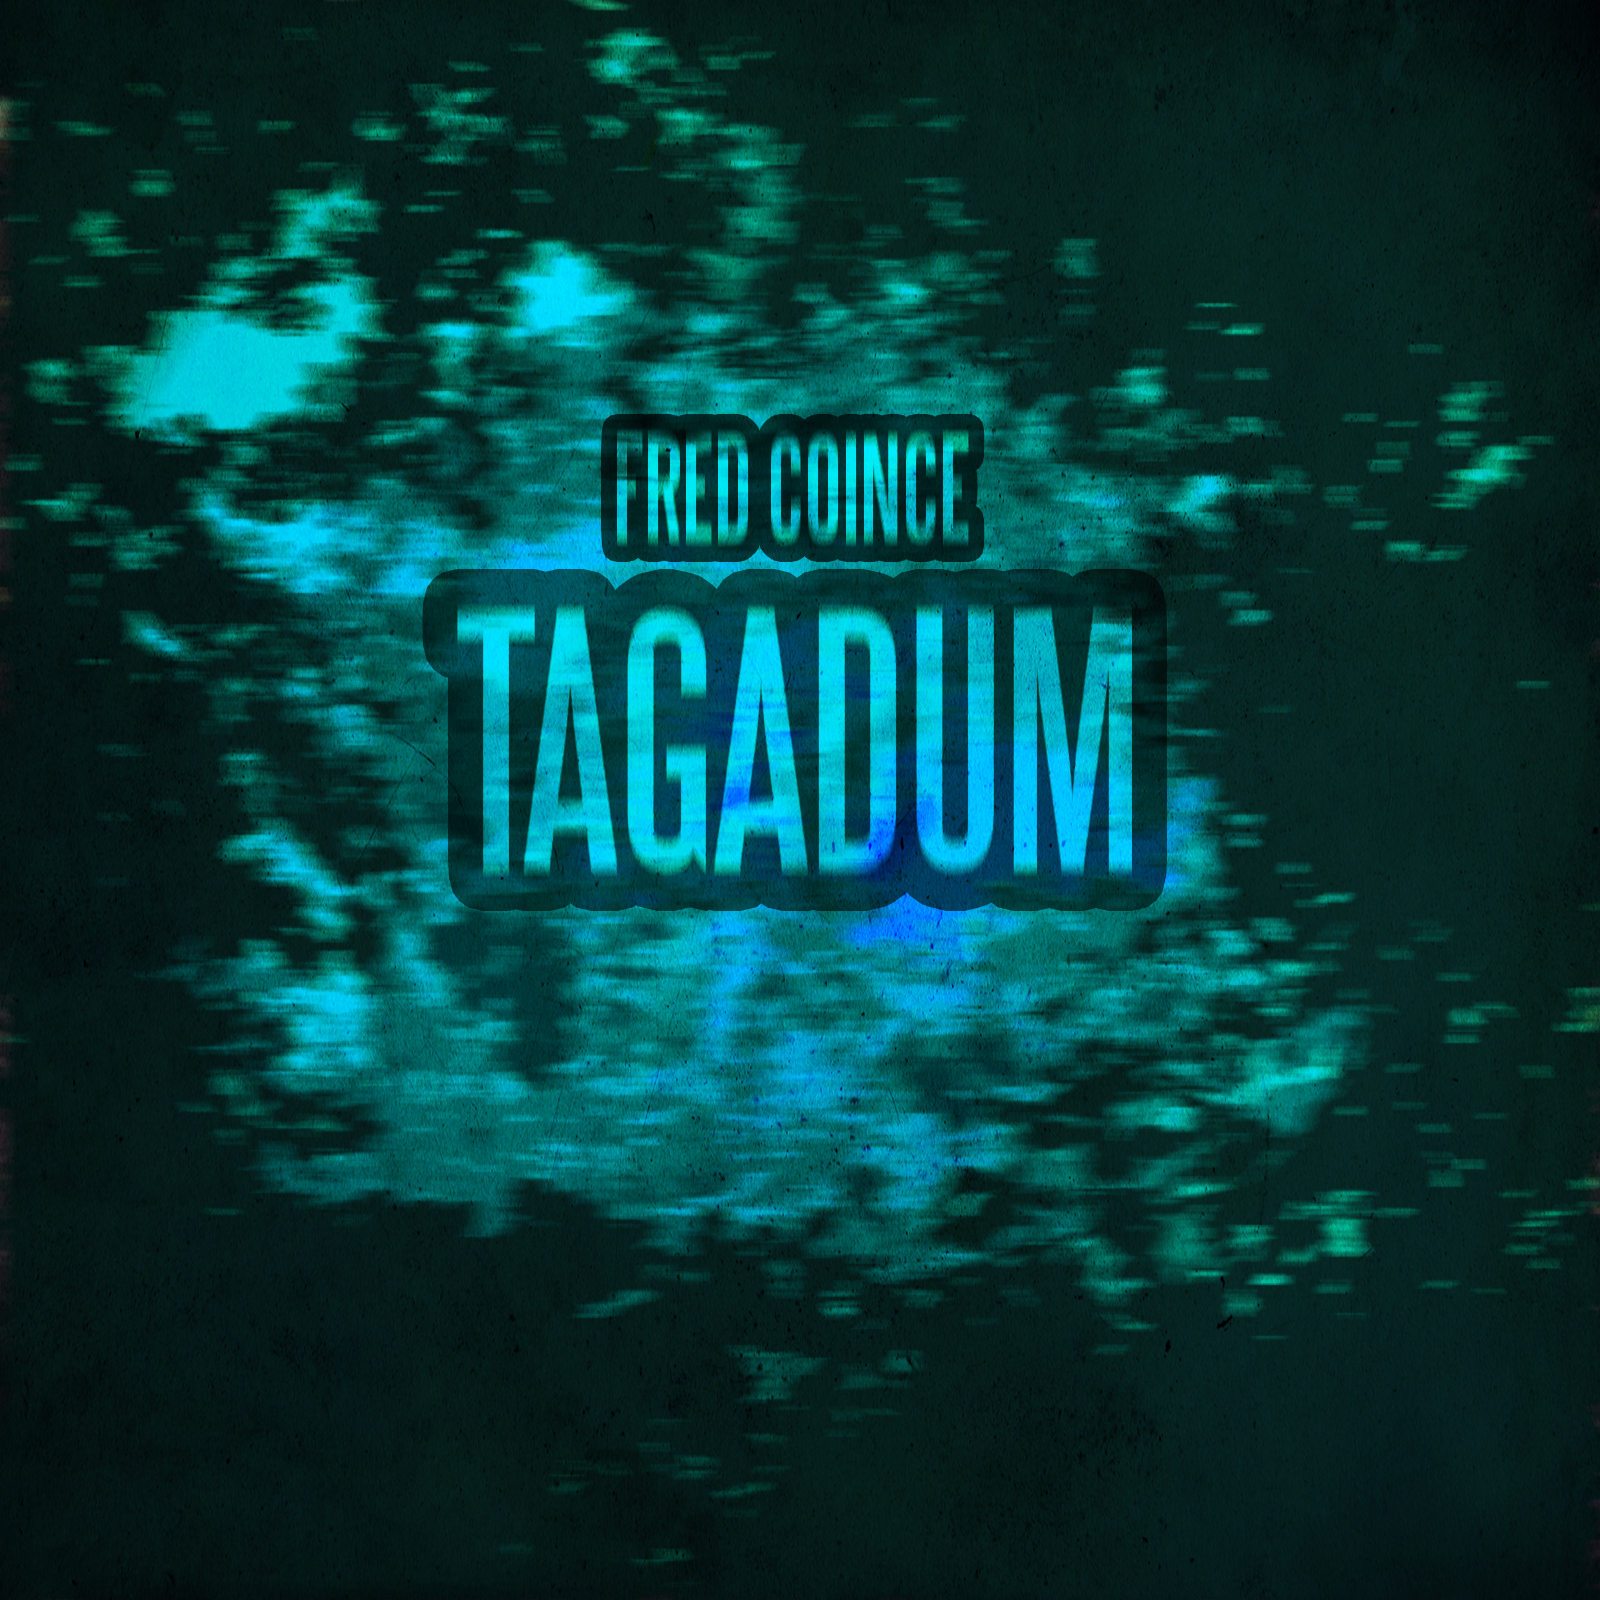 Tagadum (Alternative version)